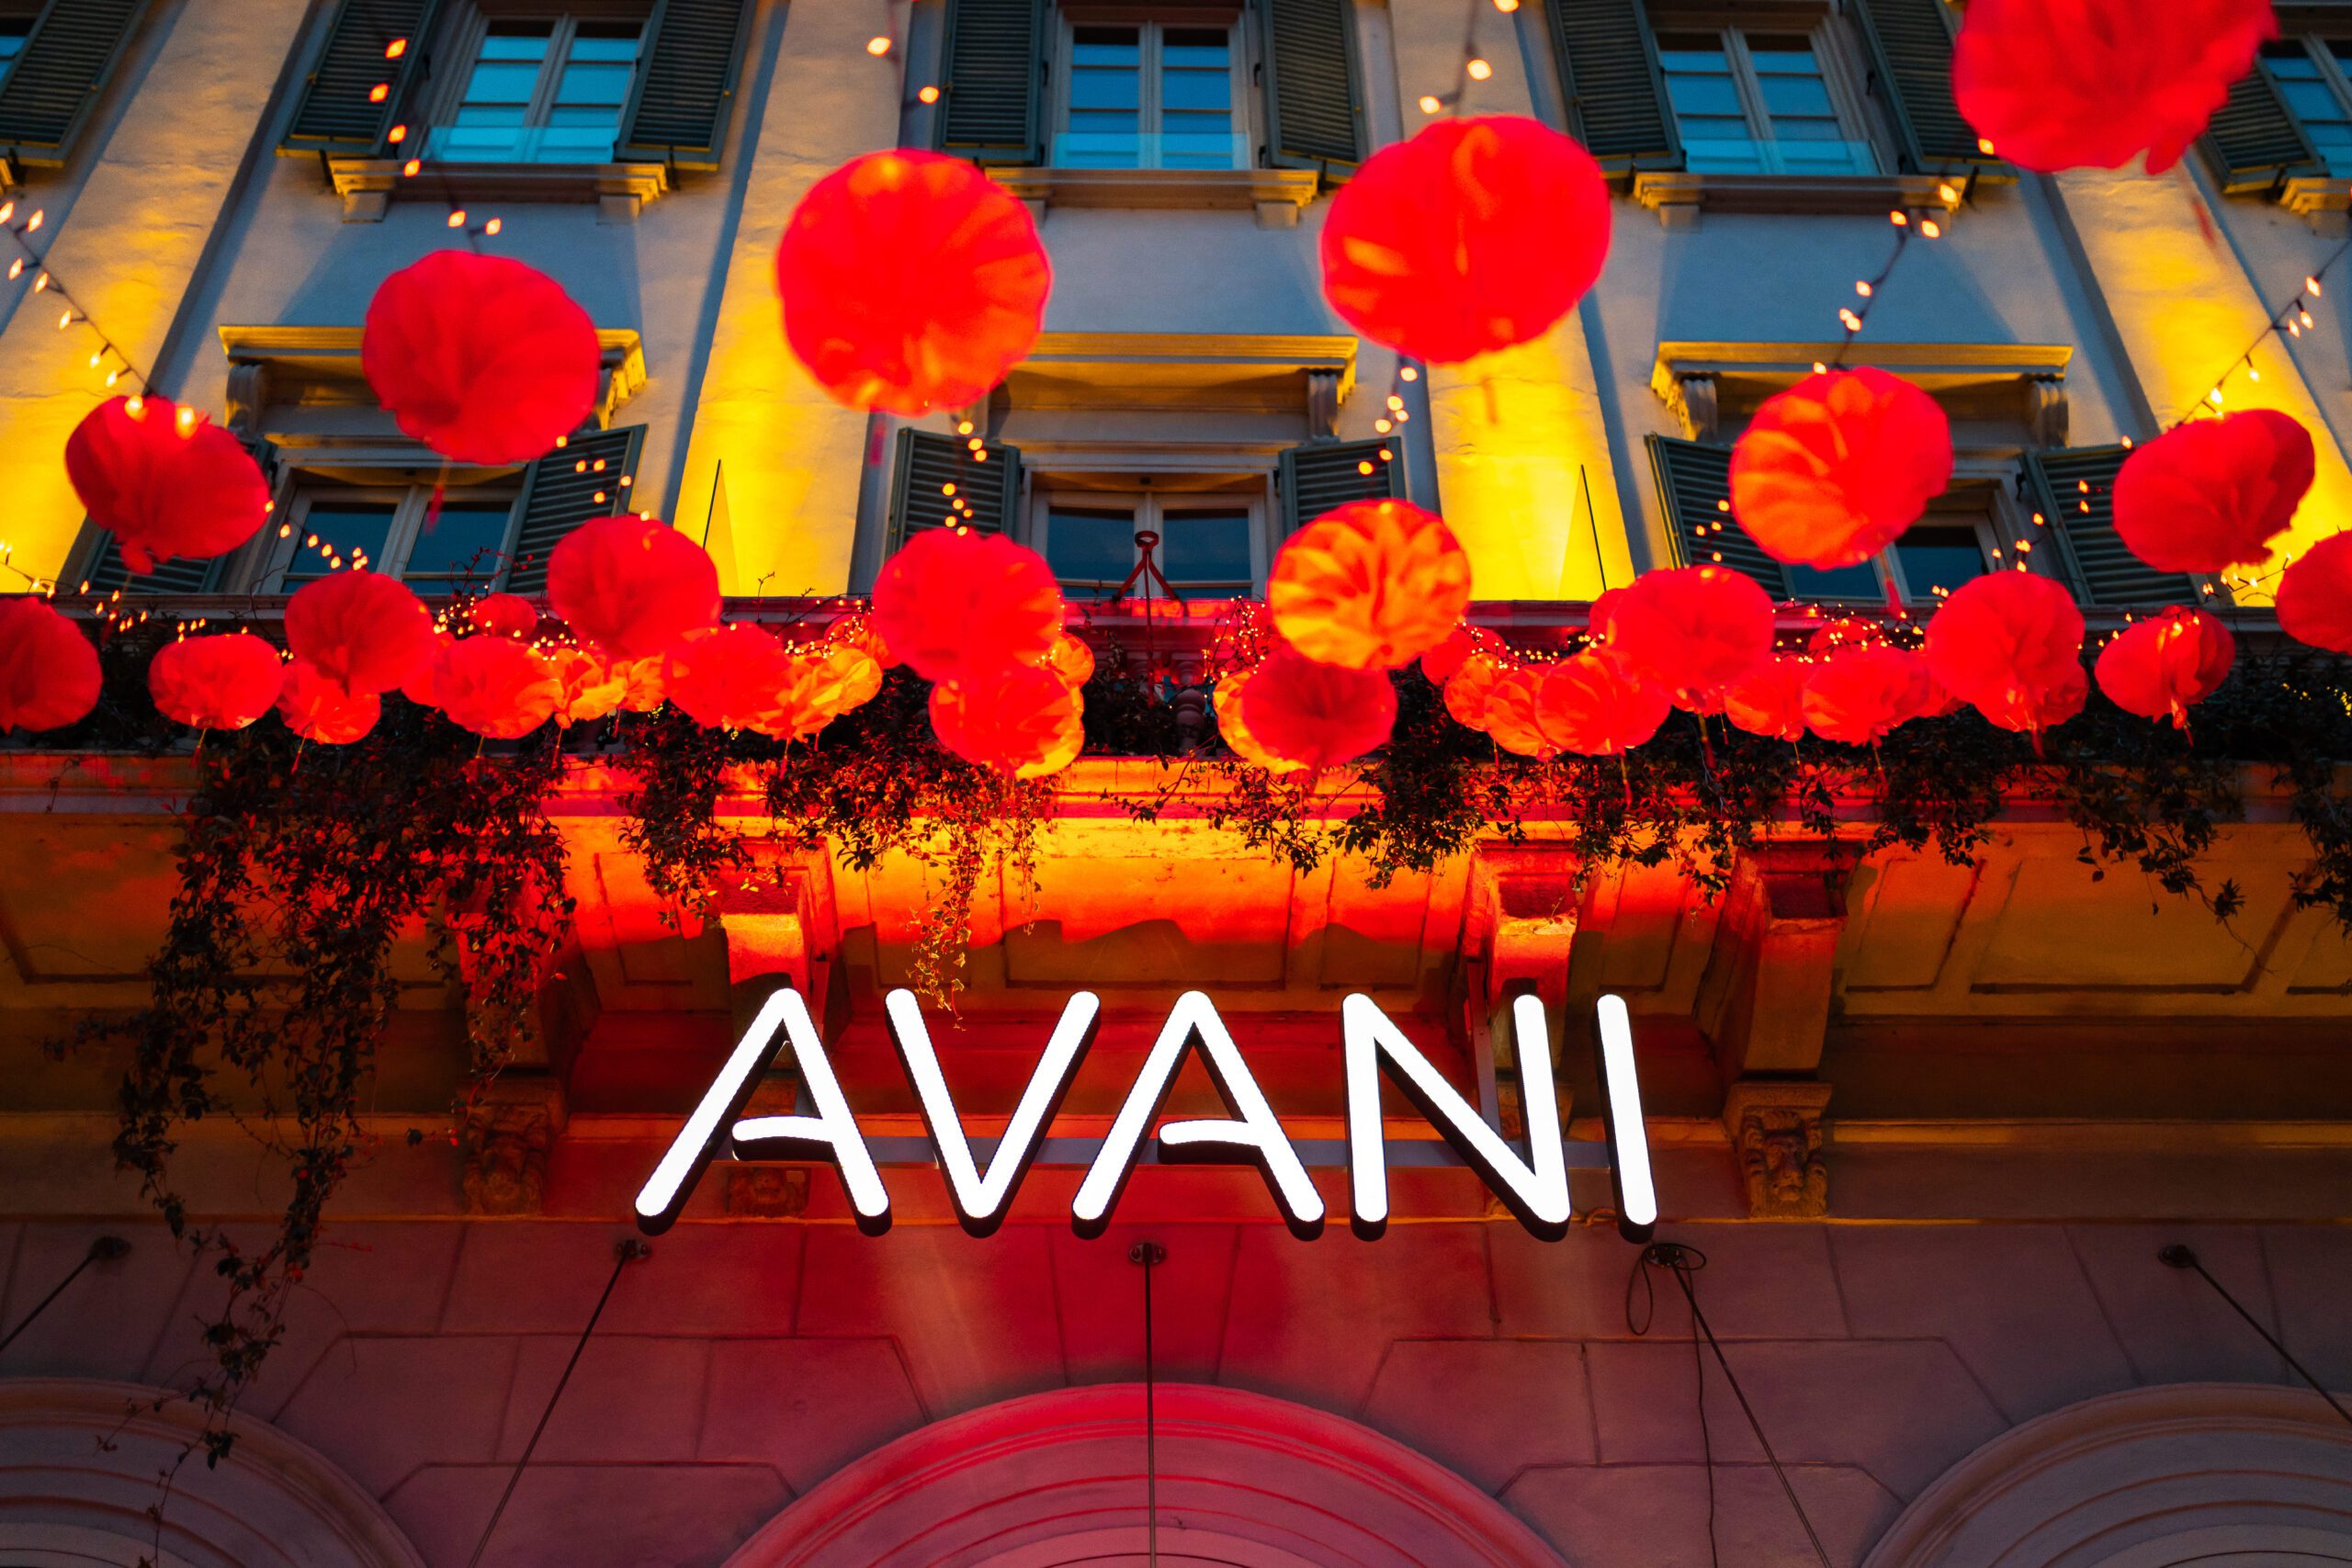 Avani Hotel celebra il capodanno cinese